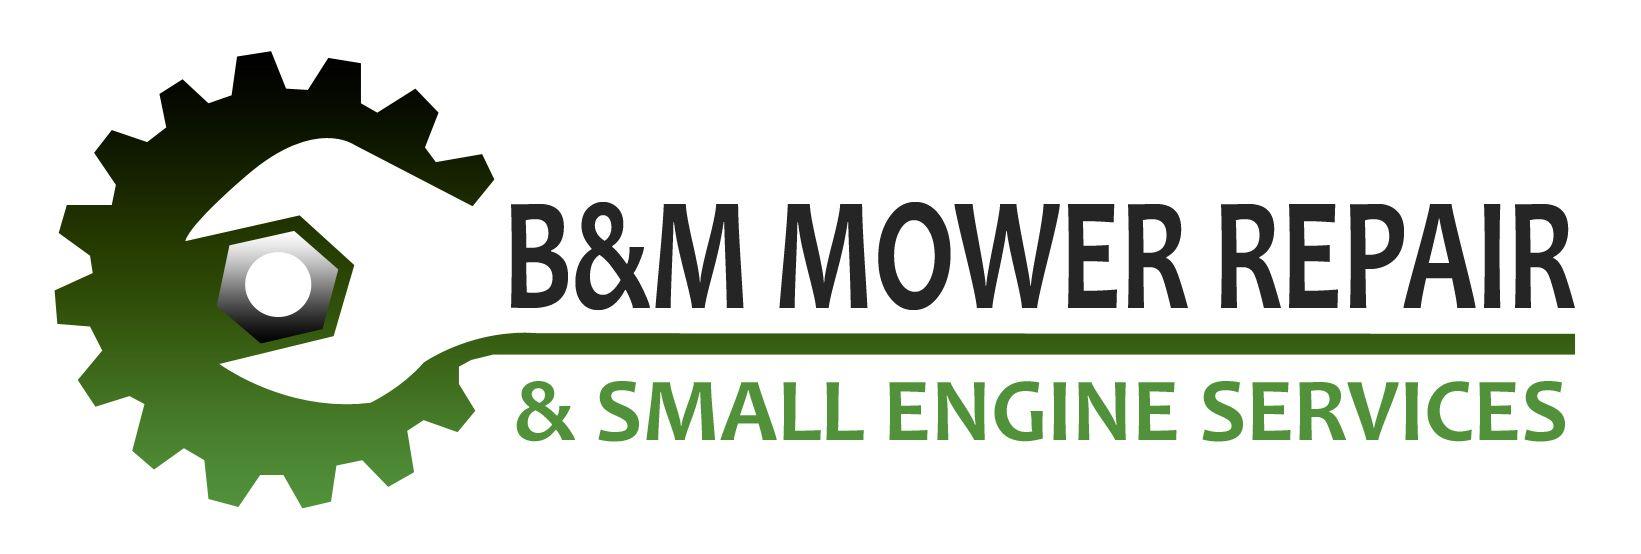 Lawn Mower Repair Service Logo - B & M Mower Repair